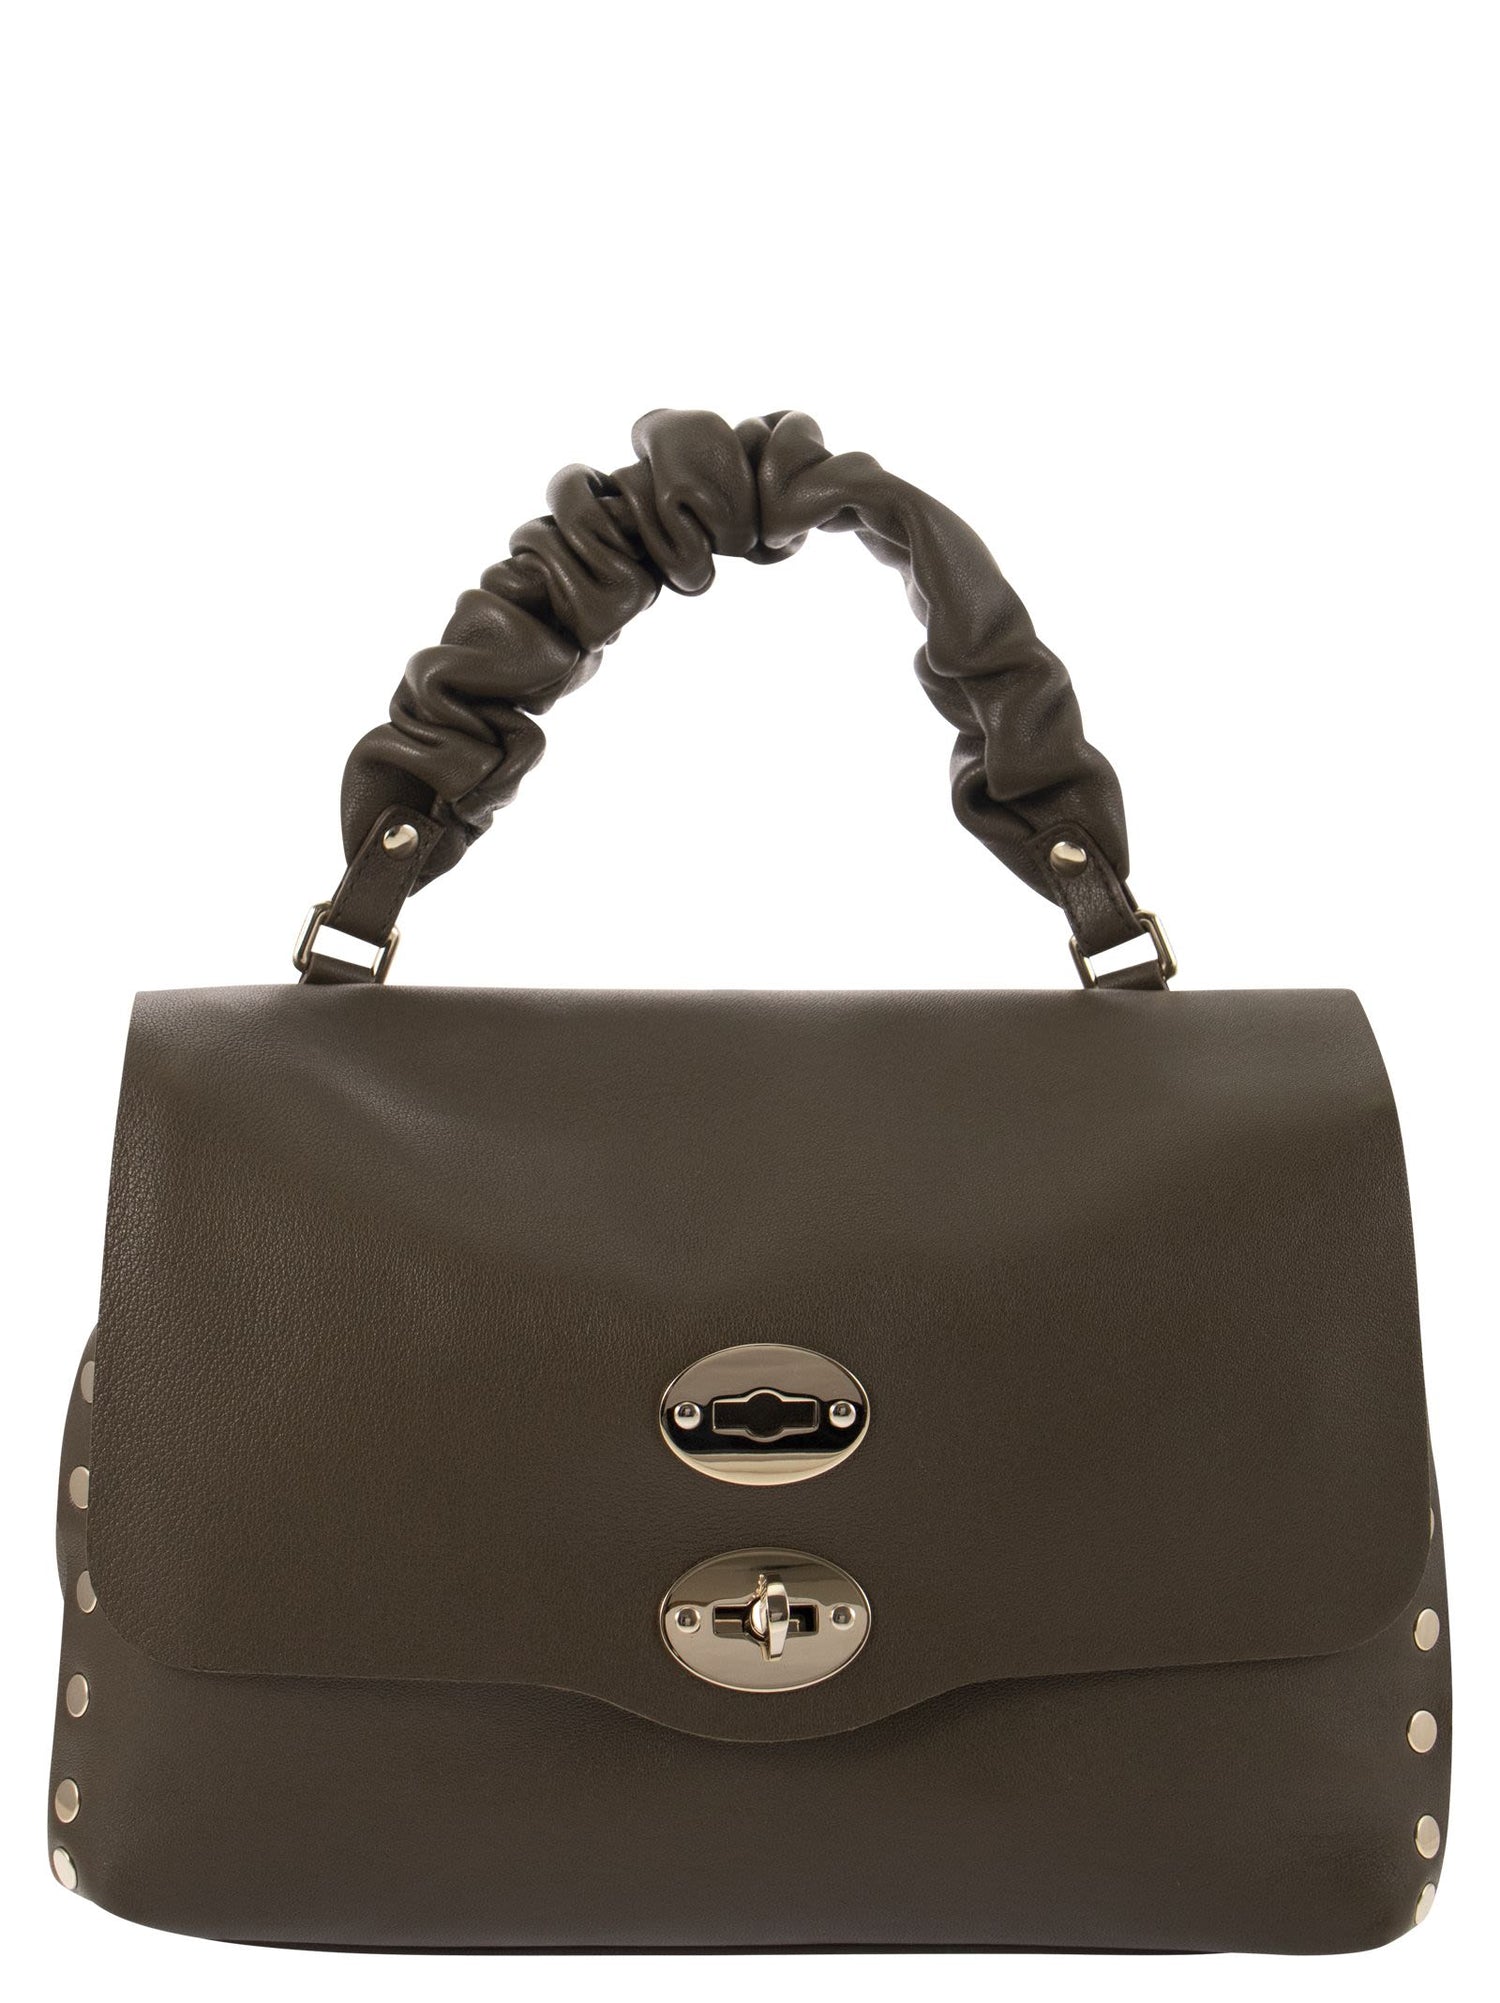 ZANELLATO - Postina S Heritage Leather Bag